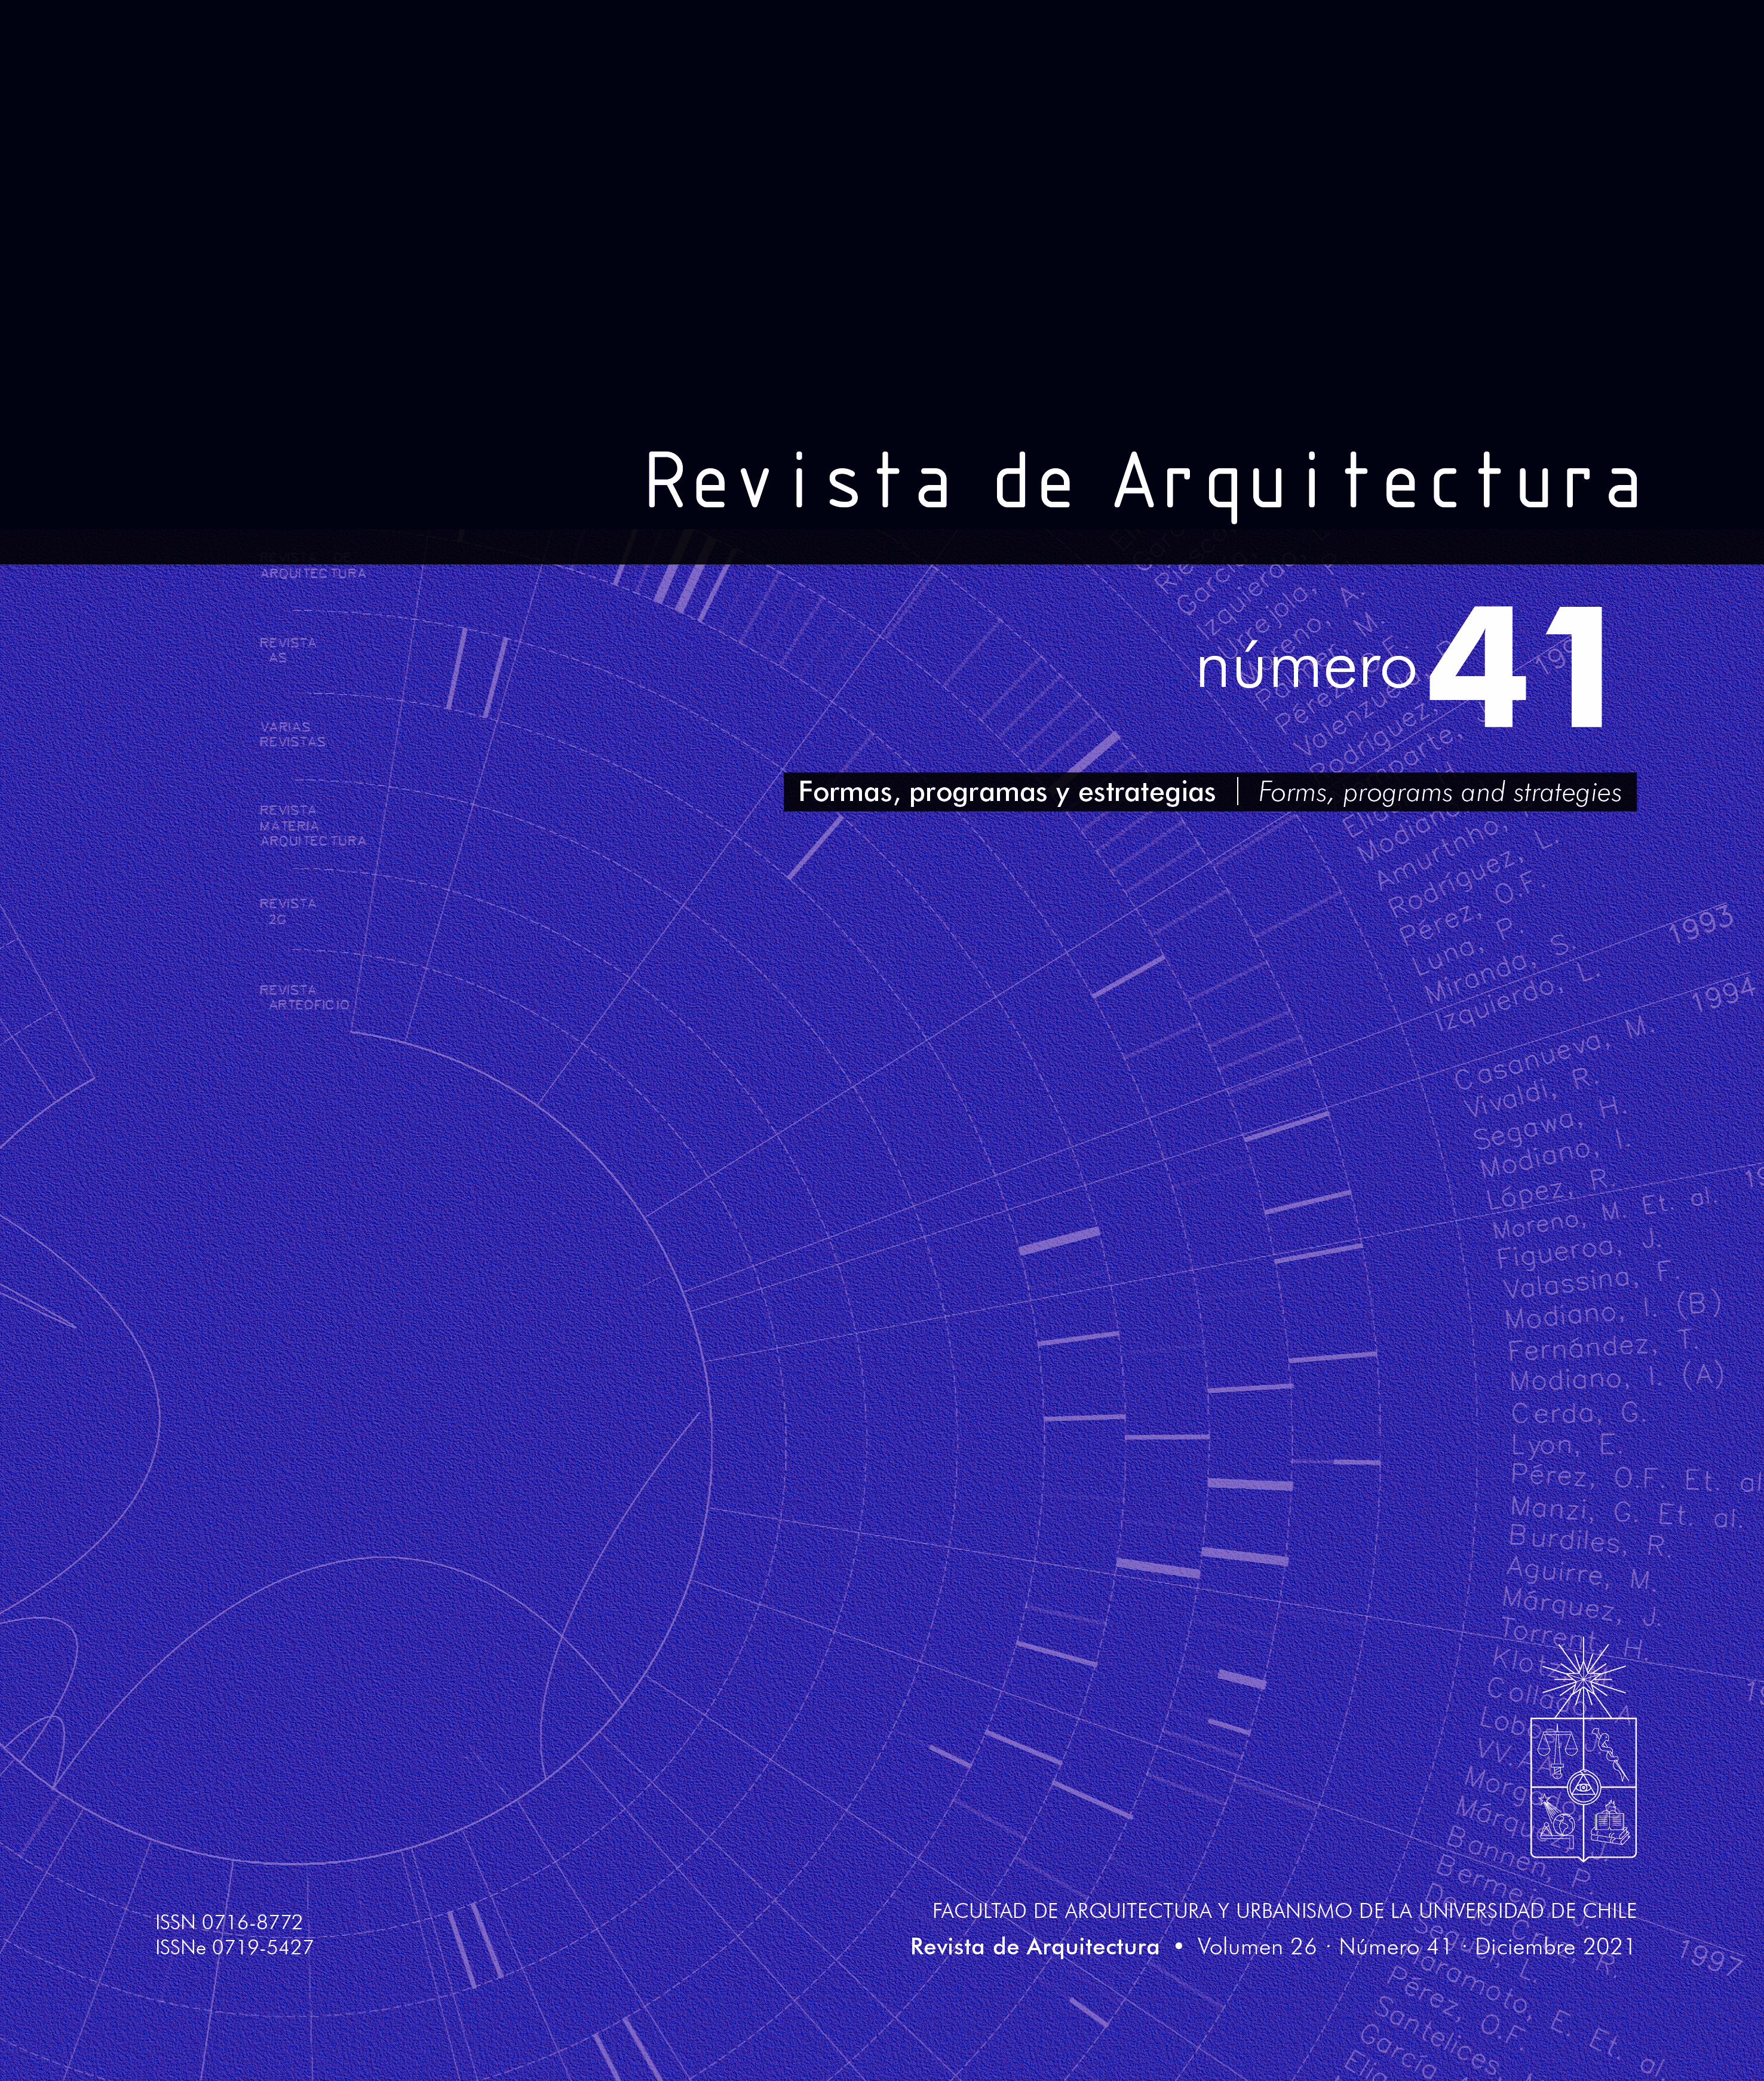 							View Vol. 26 No. 41 (2021): Formas, programas y estrategias
						